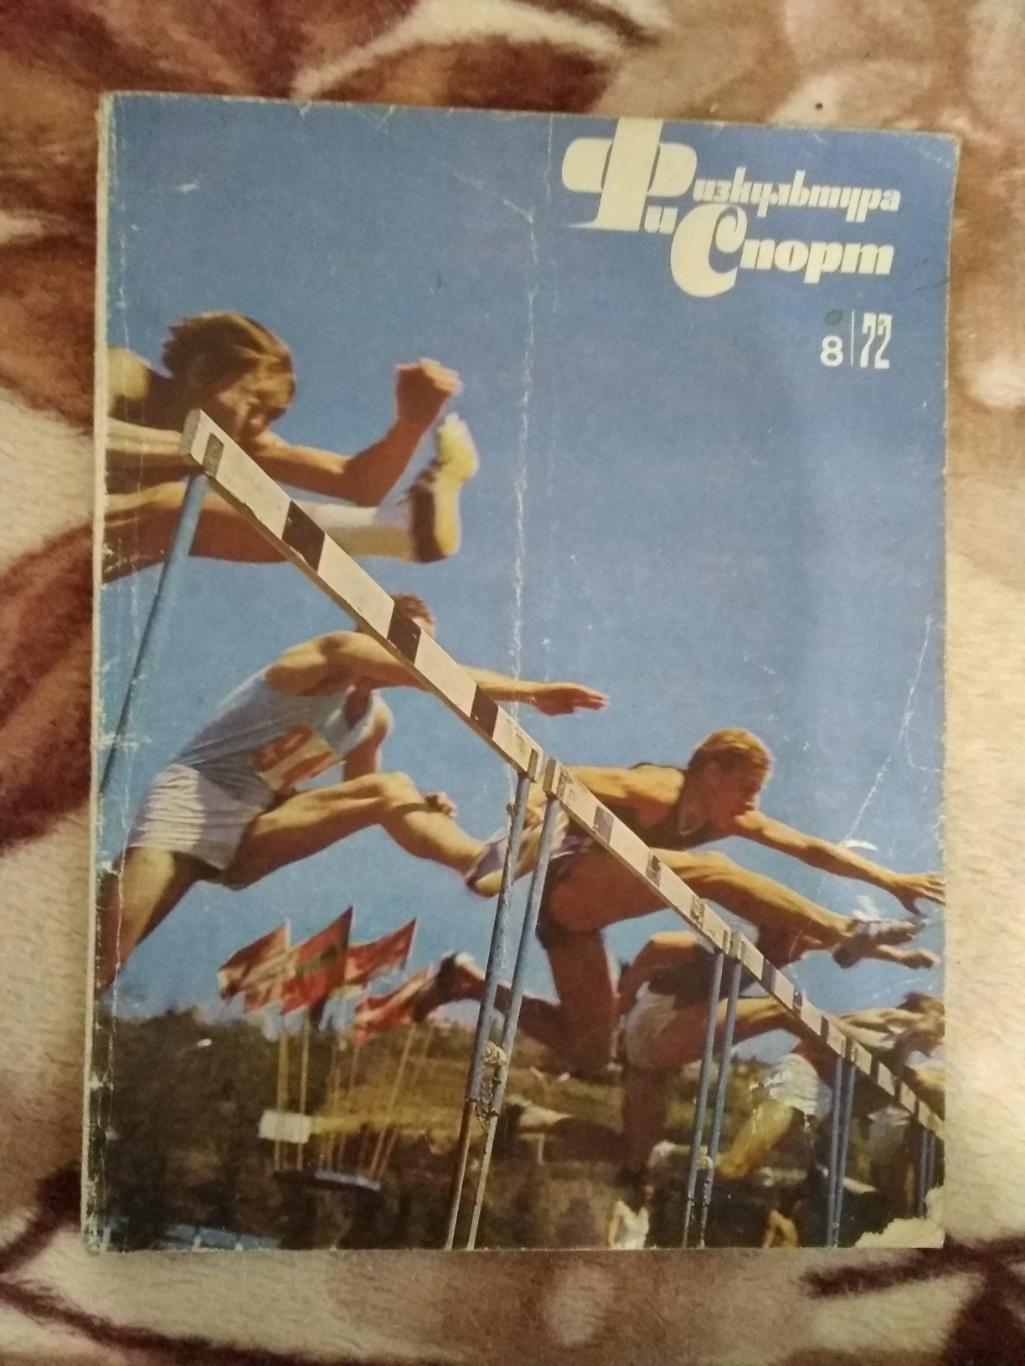 Журнал.Физкультура и спорт № 8 1972 г. (ФиС).